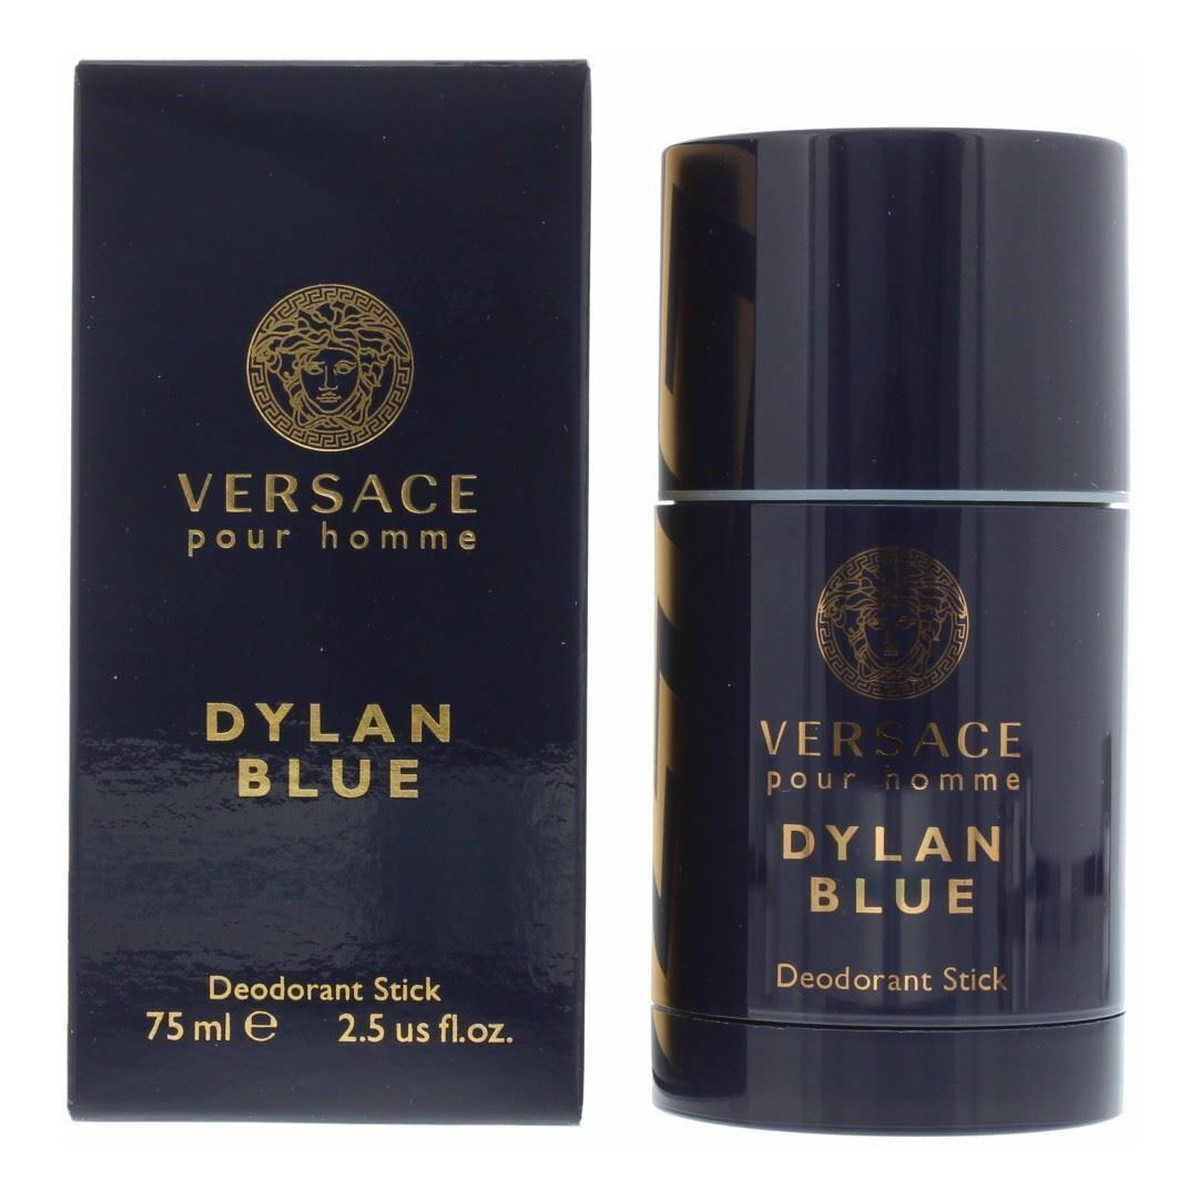 Versace Pour Homme Dylan Blue dezodorant sztyft 75ml